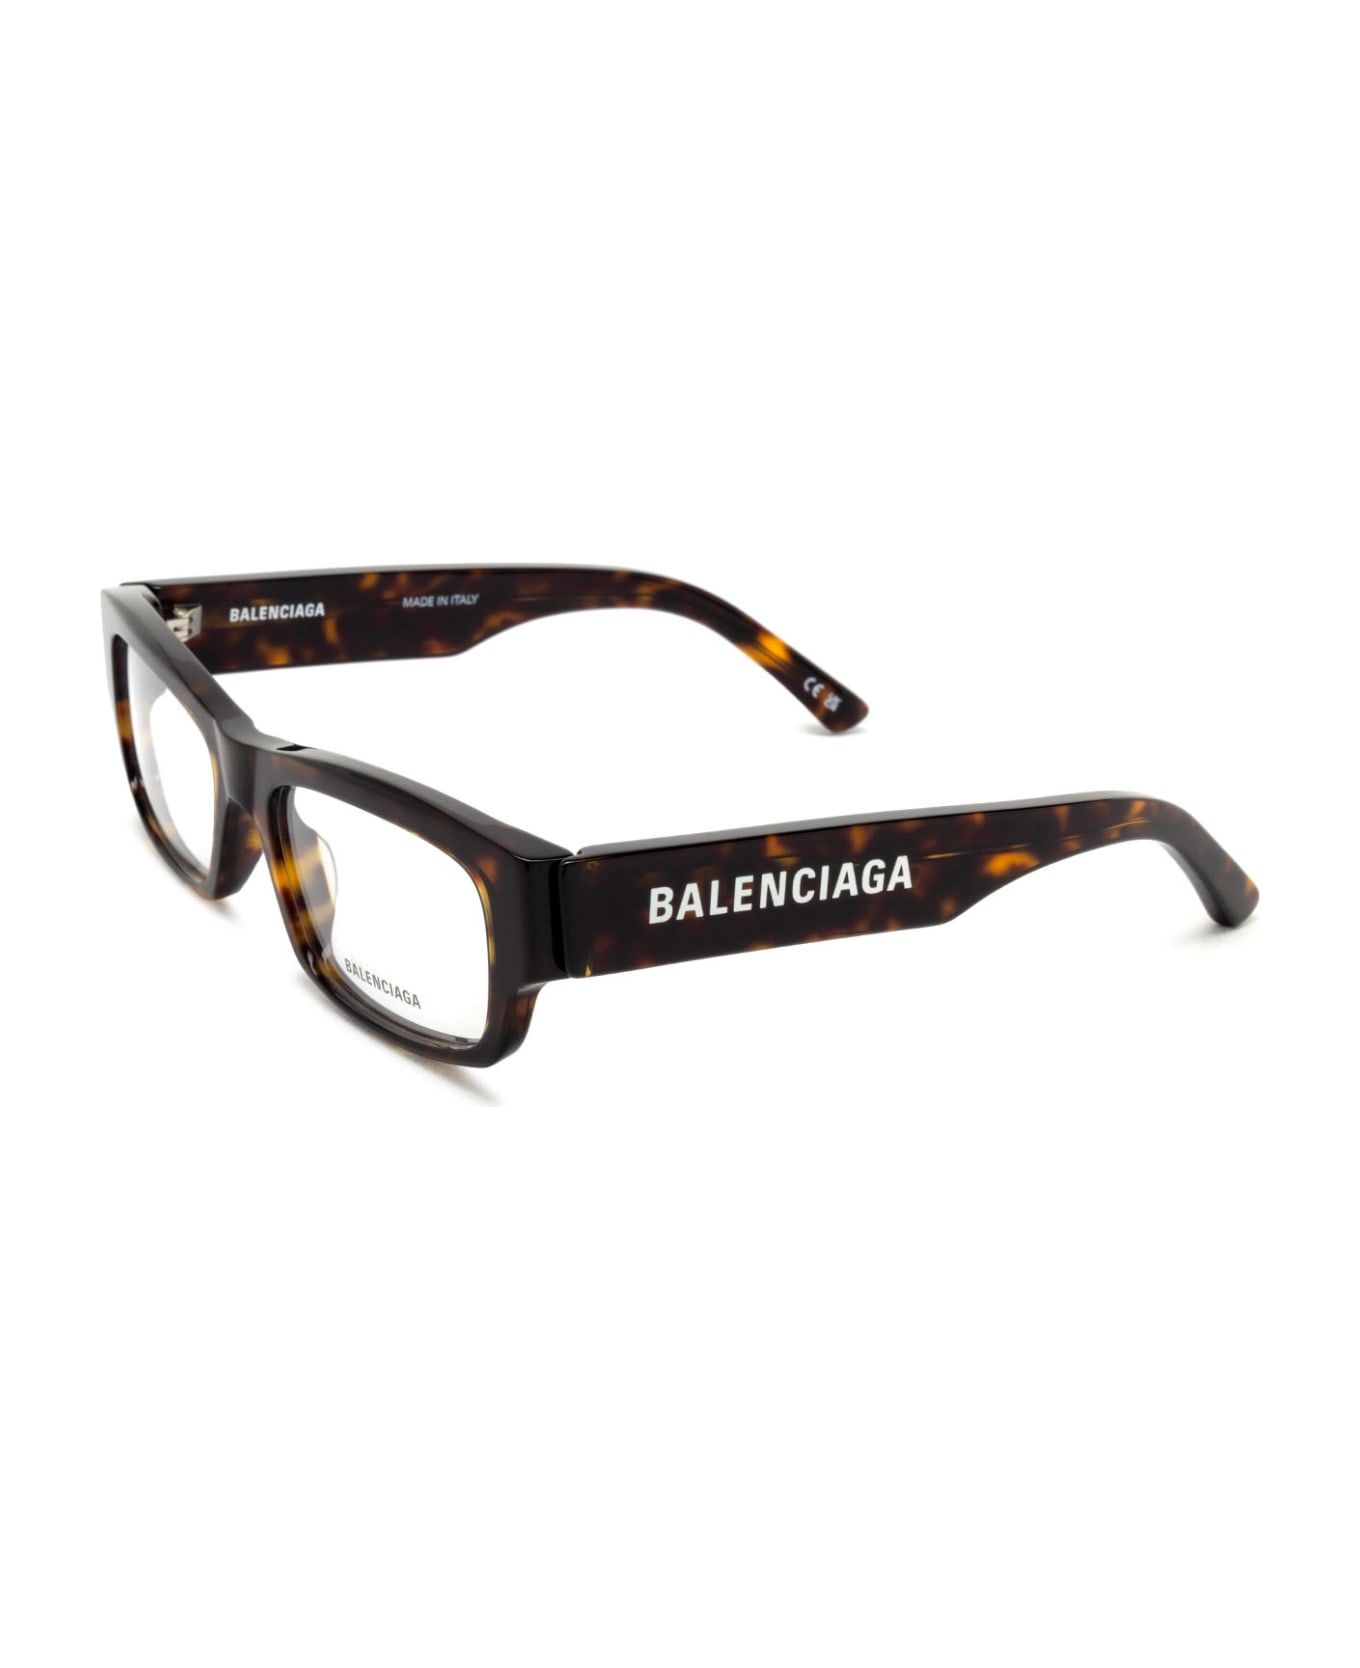 Balenciaga Eyewear Bb0265o Glasses - Havana